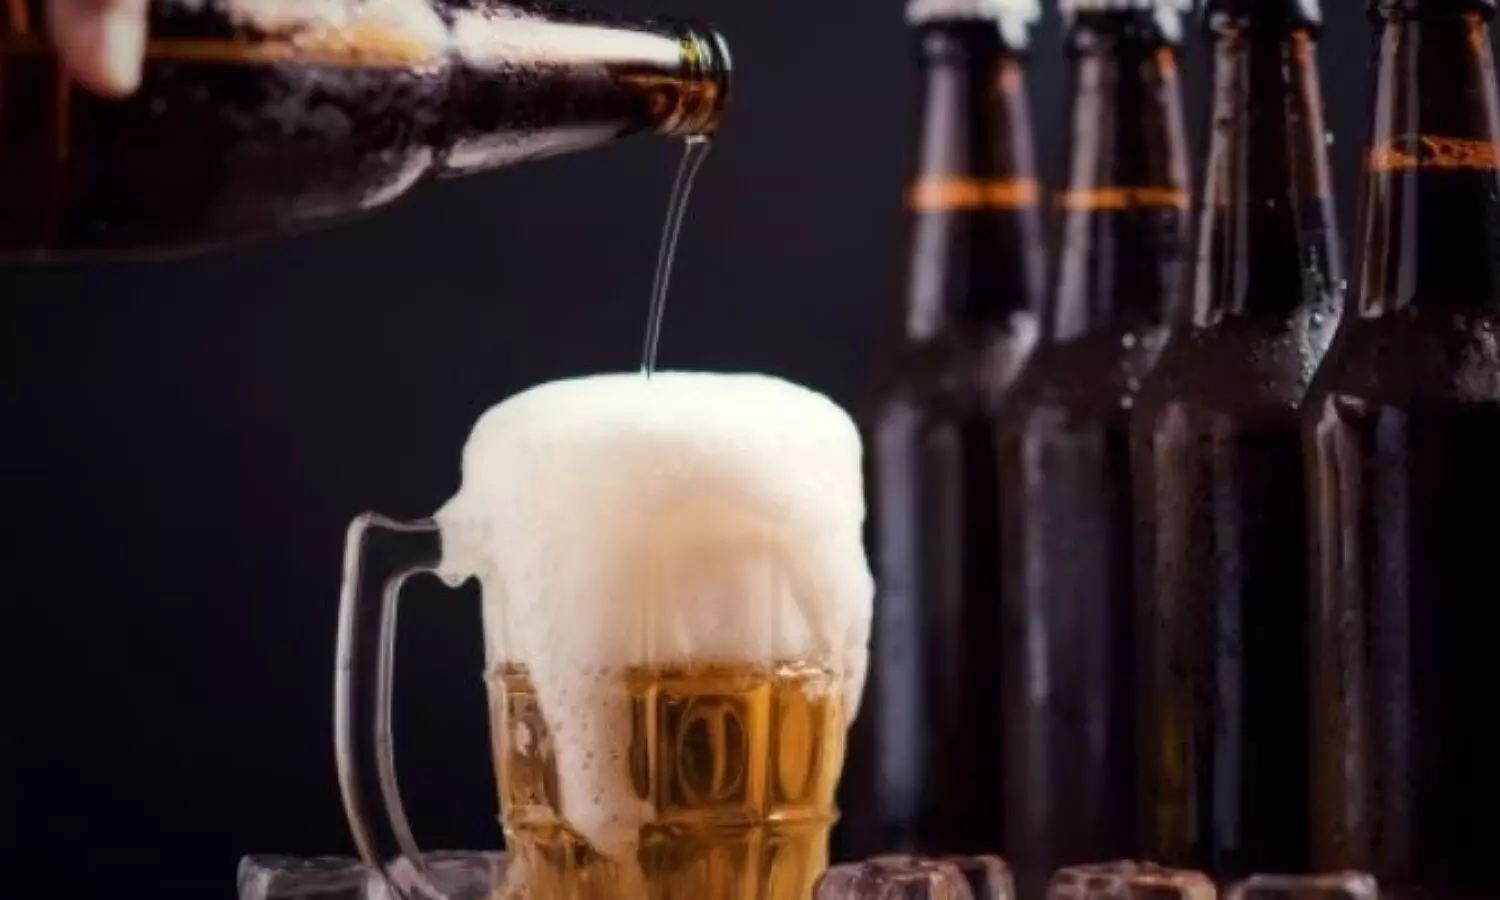 Beer Health Benefits